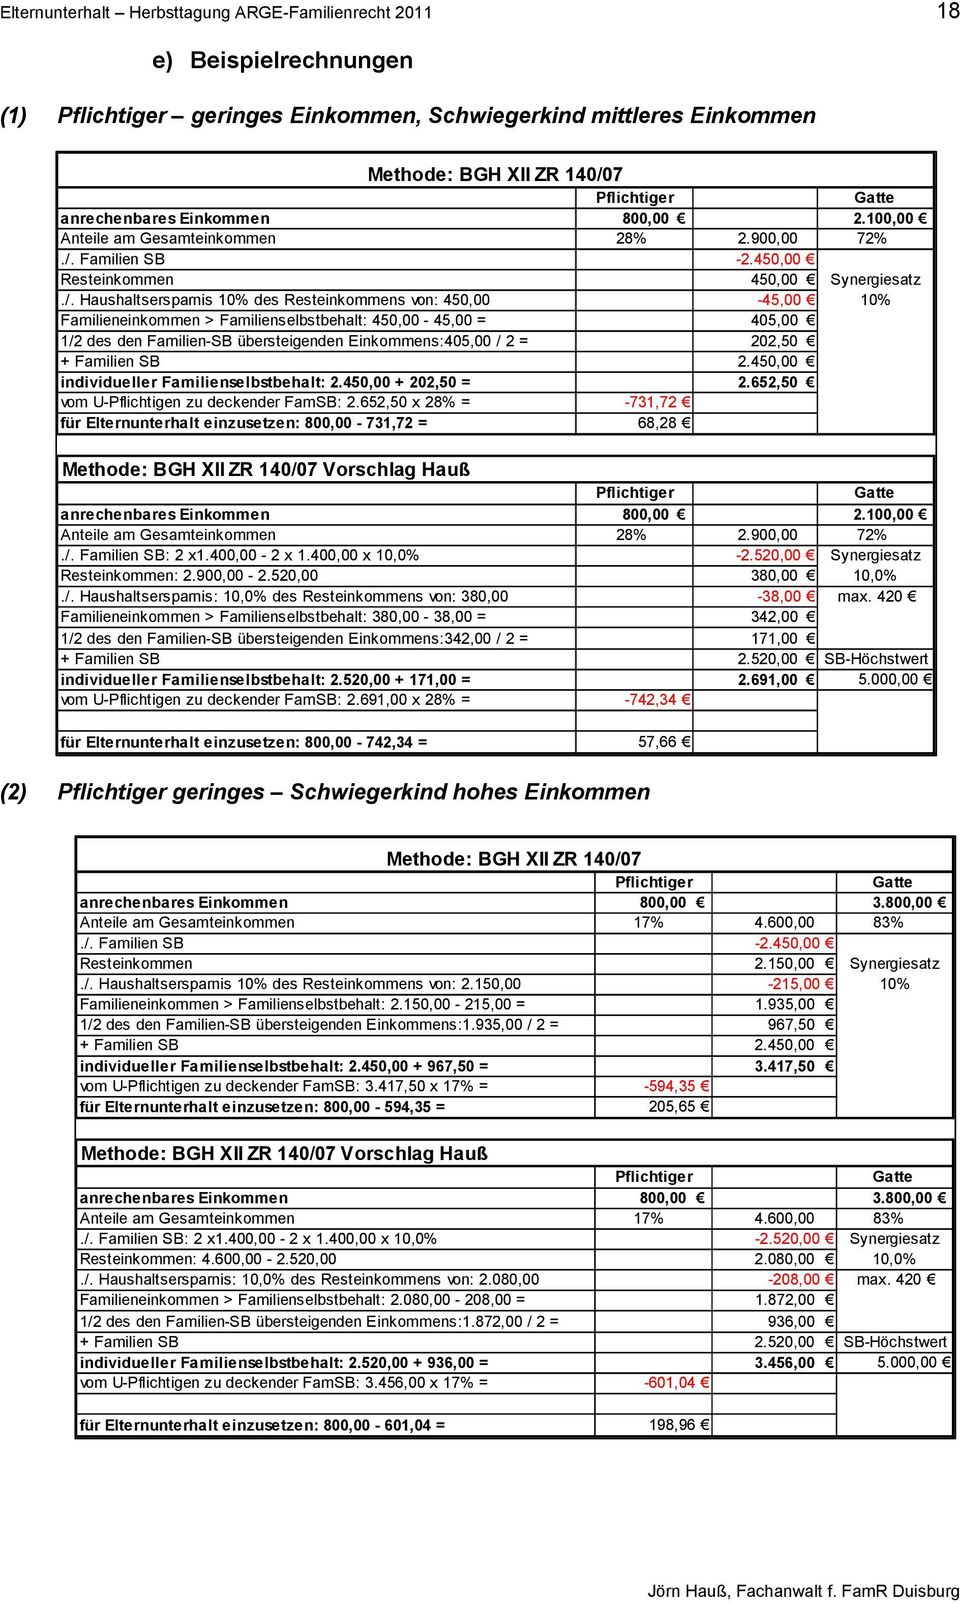 Familien SB -2.450,00 Resteinkommen 450,00 Synergiesatz./.